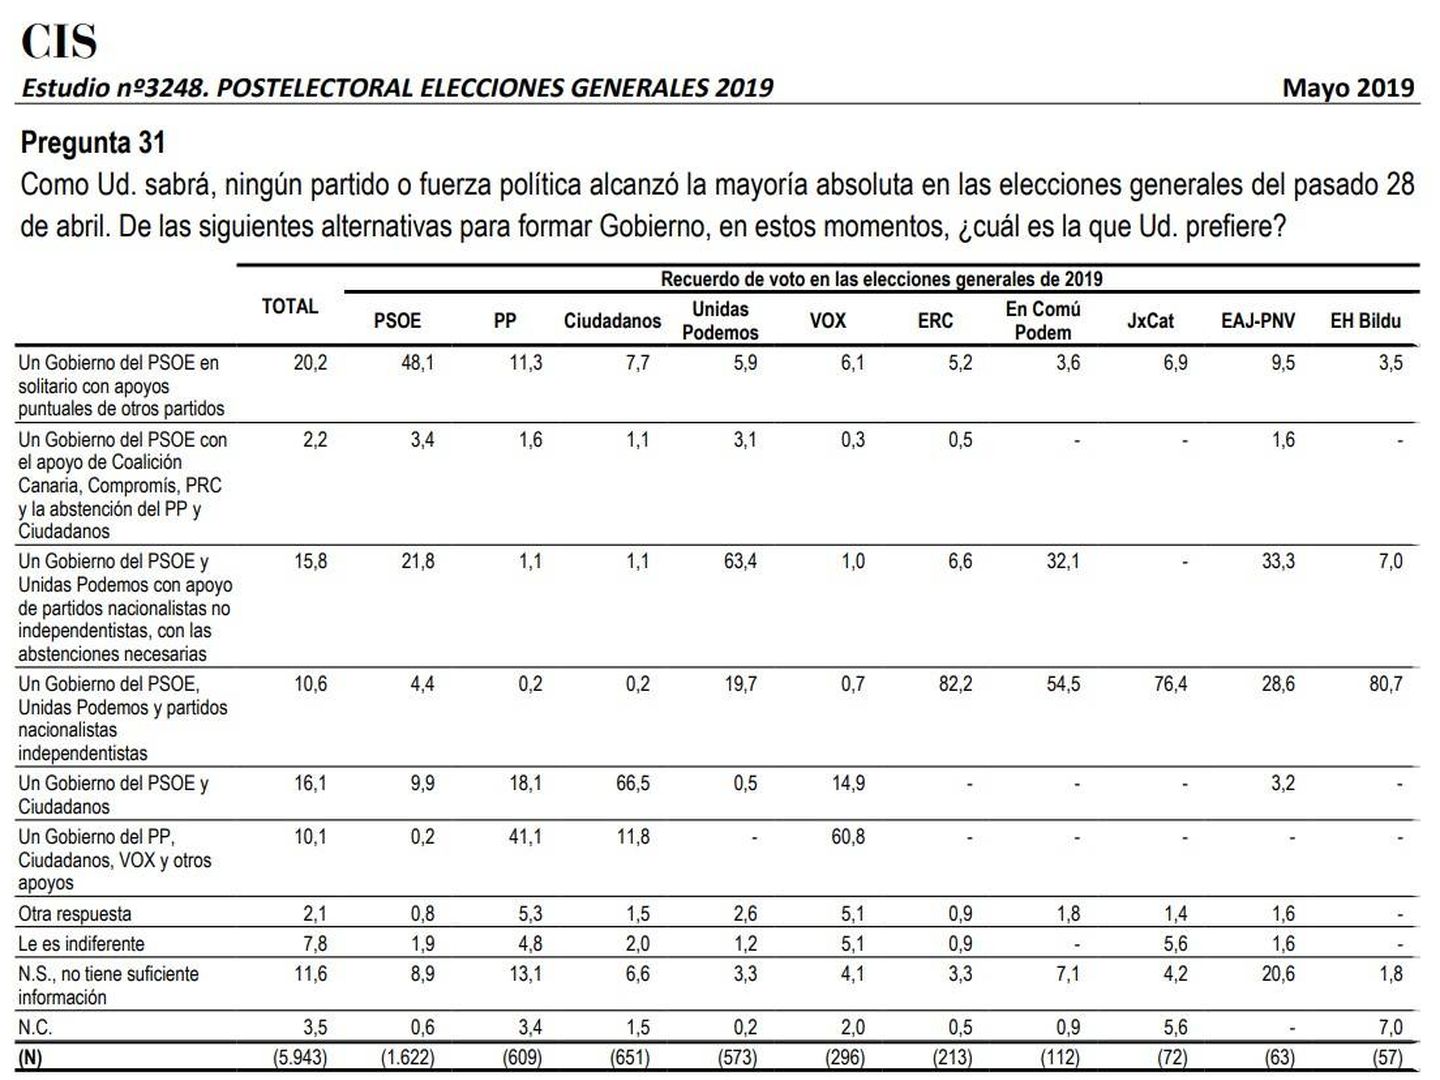 Barómetro poselectoral del CIS de las generales del 28-A: los pactos preferidos según los votantes. 